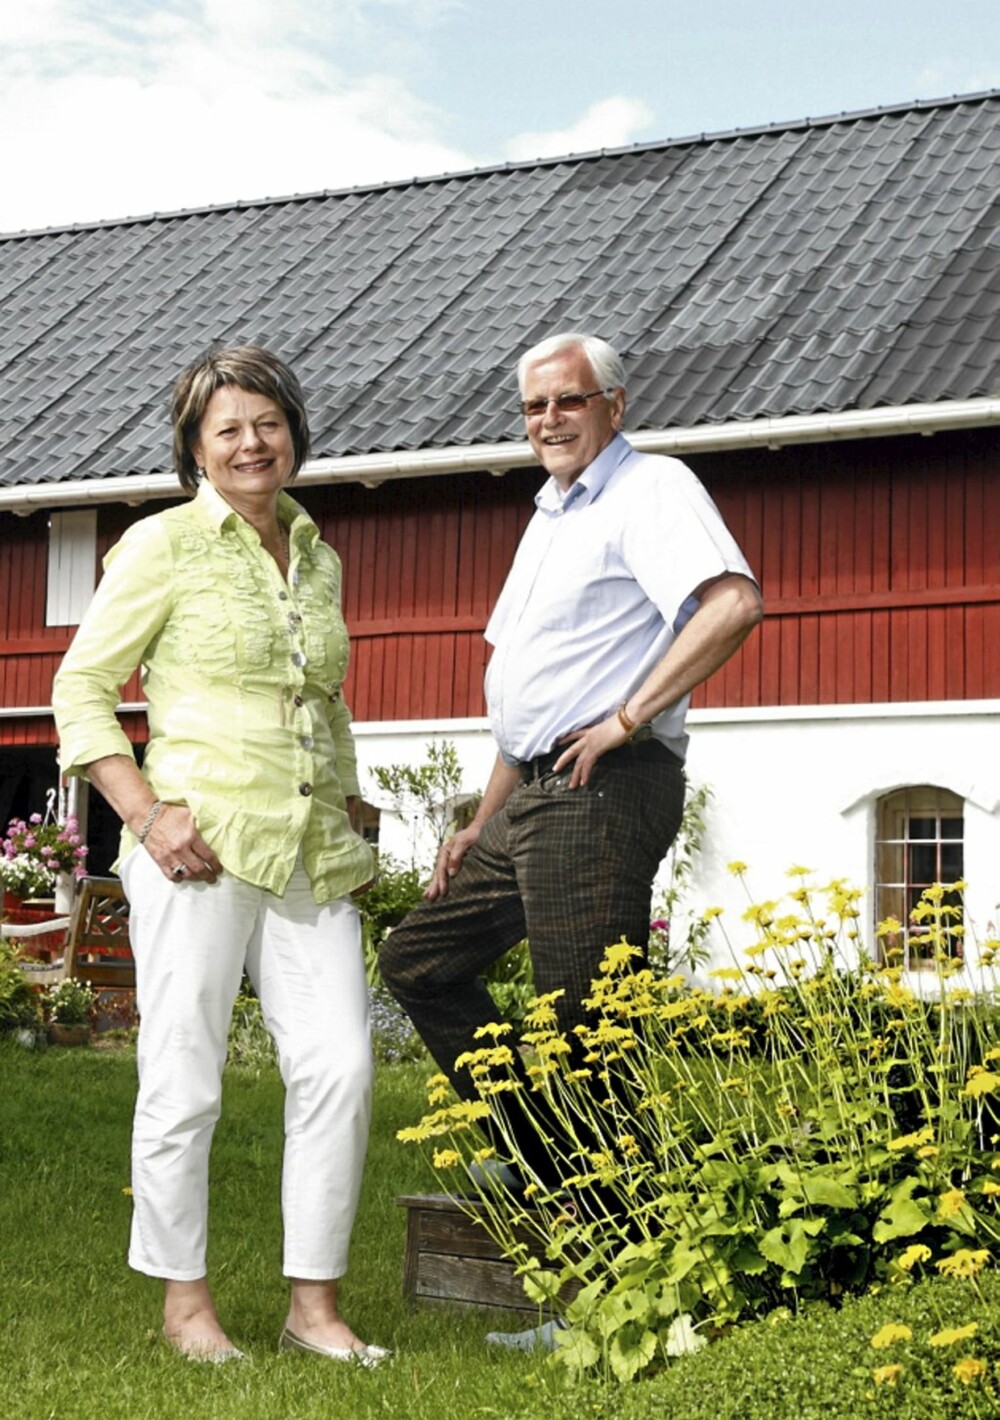 KOMBINERER: Reidunn og Øystein tar imot kursdeltagere i låven, som rommer topp moderne lokaler. Om sommeren, når det er stille på kursfronten, stortrives begge med gartnervirksomhet i den fantastiske hagen de har anlagt rundt småbruket.